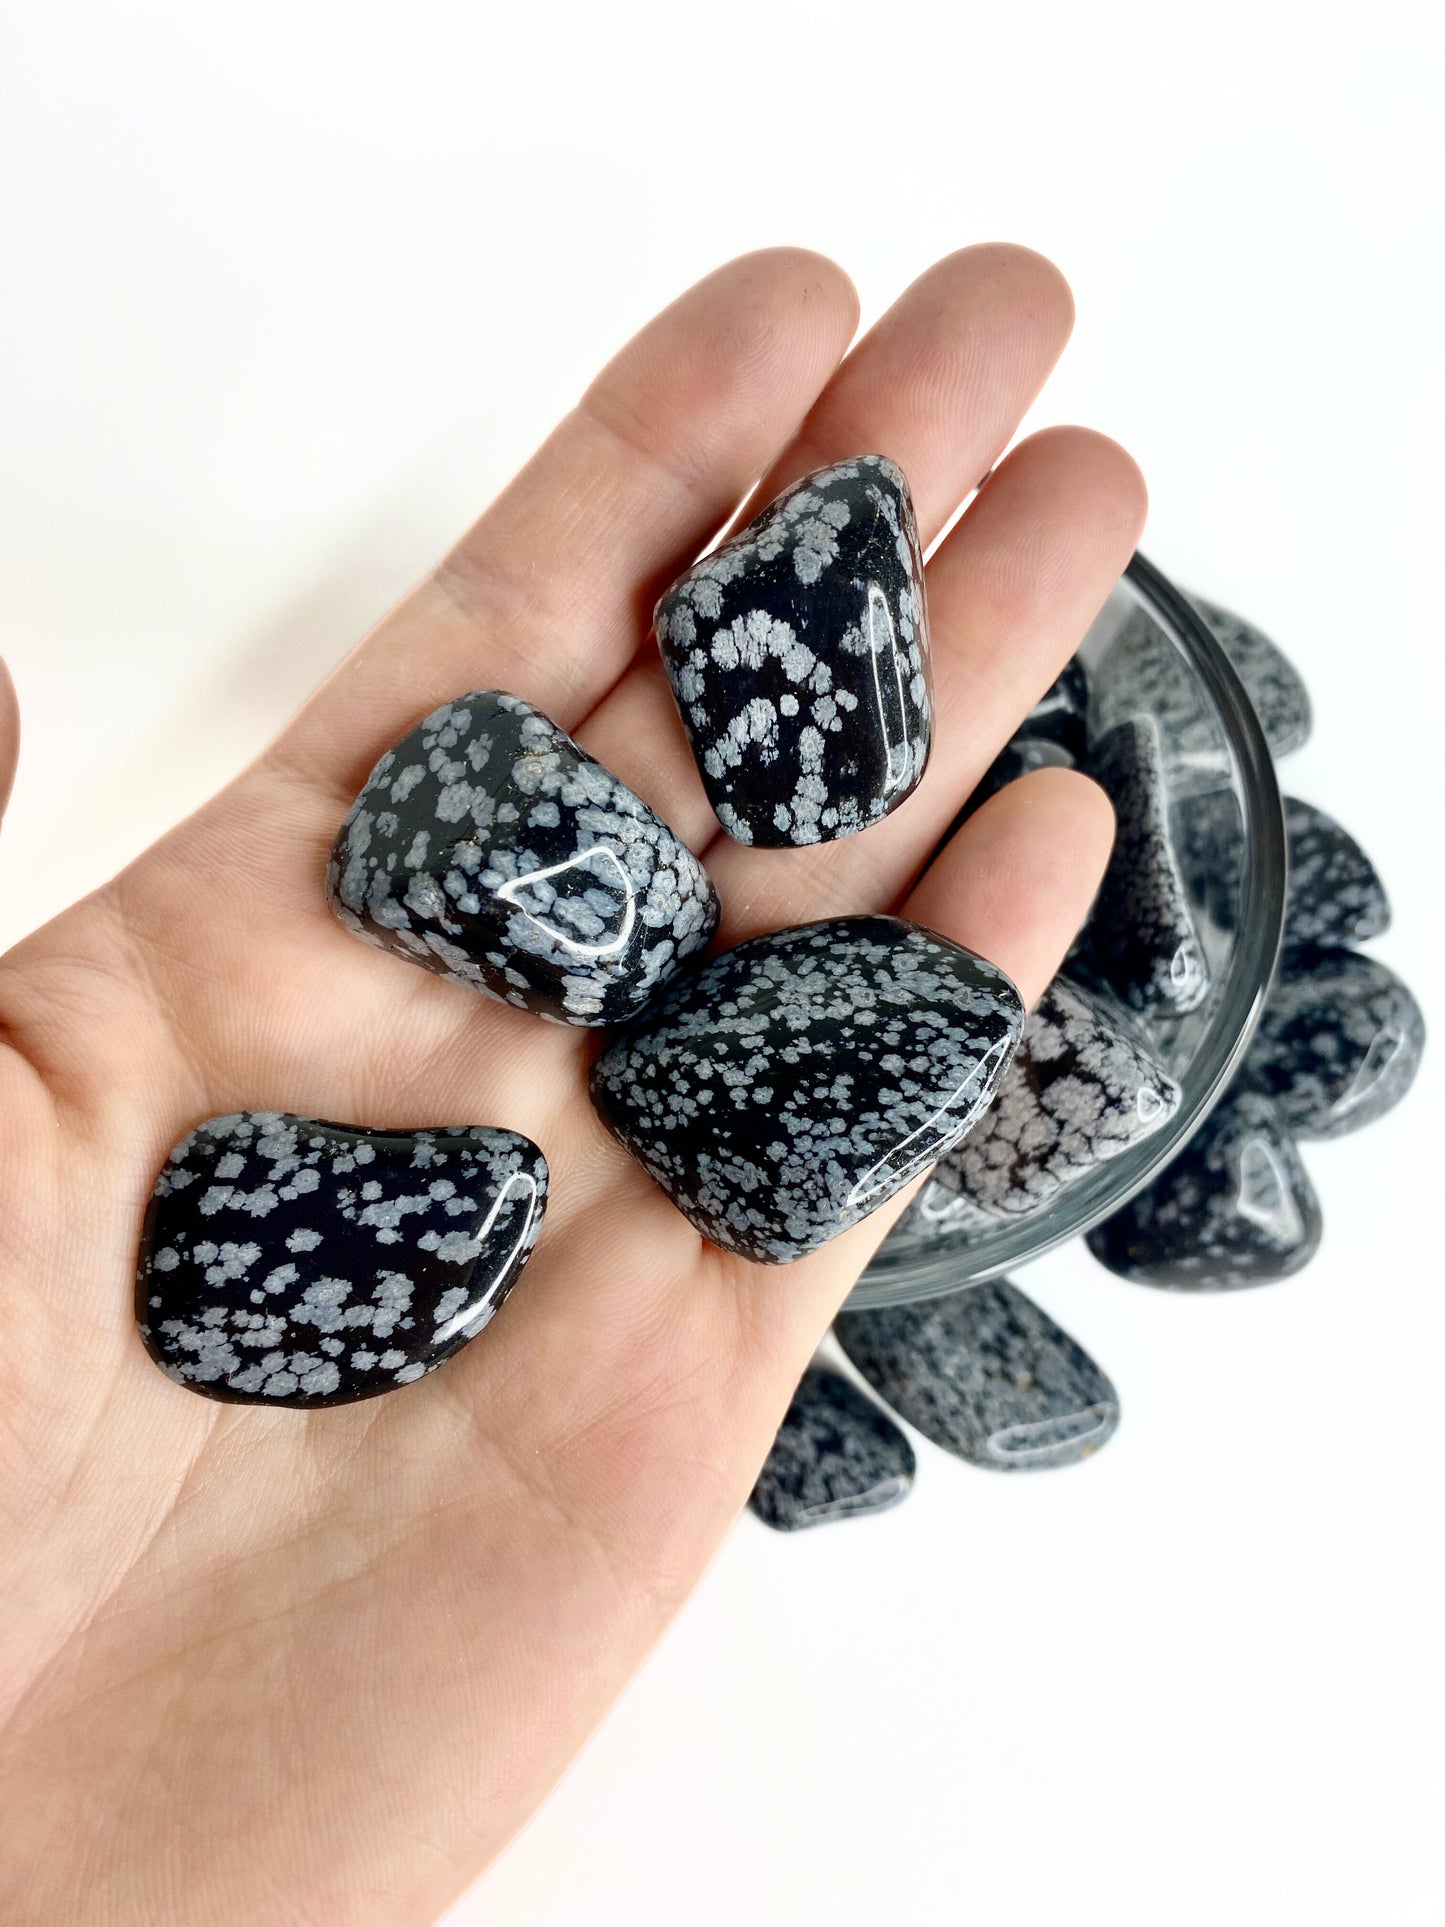 Snowflake Obsidian Tumbled Pocket Stone -